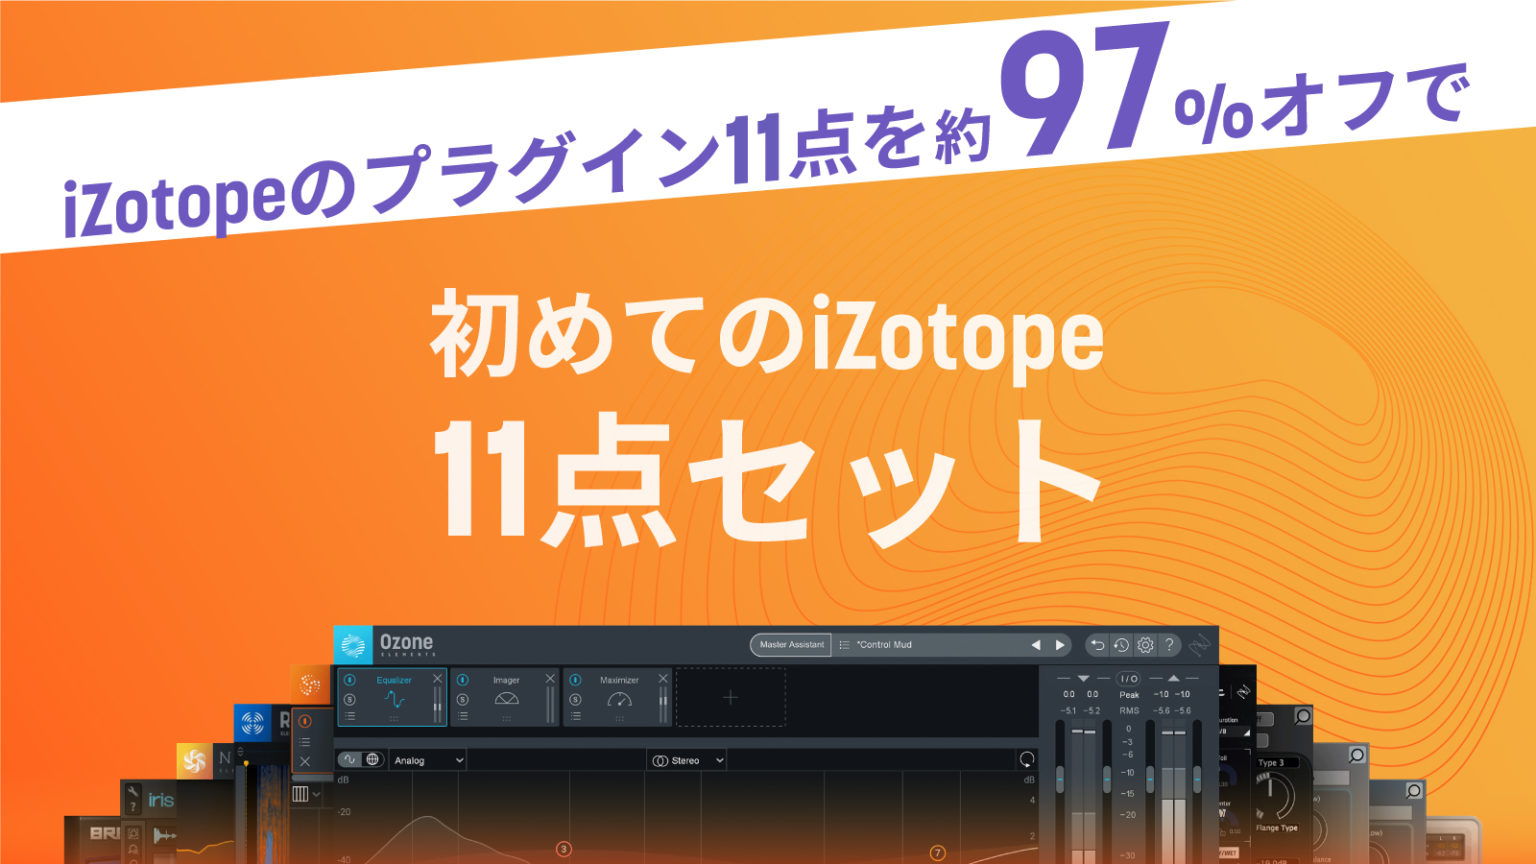 *iZotope とNative Instruments との提携を祝して、日本限定/期間限定での特別な14製品バンドルが登場。“初めてのiZotope 11点セット+3″が、なとん97%オフの¥5,400（税込）でゲットできます！ *専門のスタッフがご案内します。 || |木下（きのした）広島店デ […]